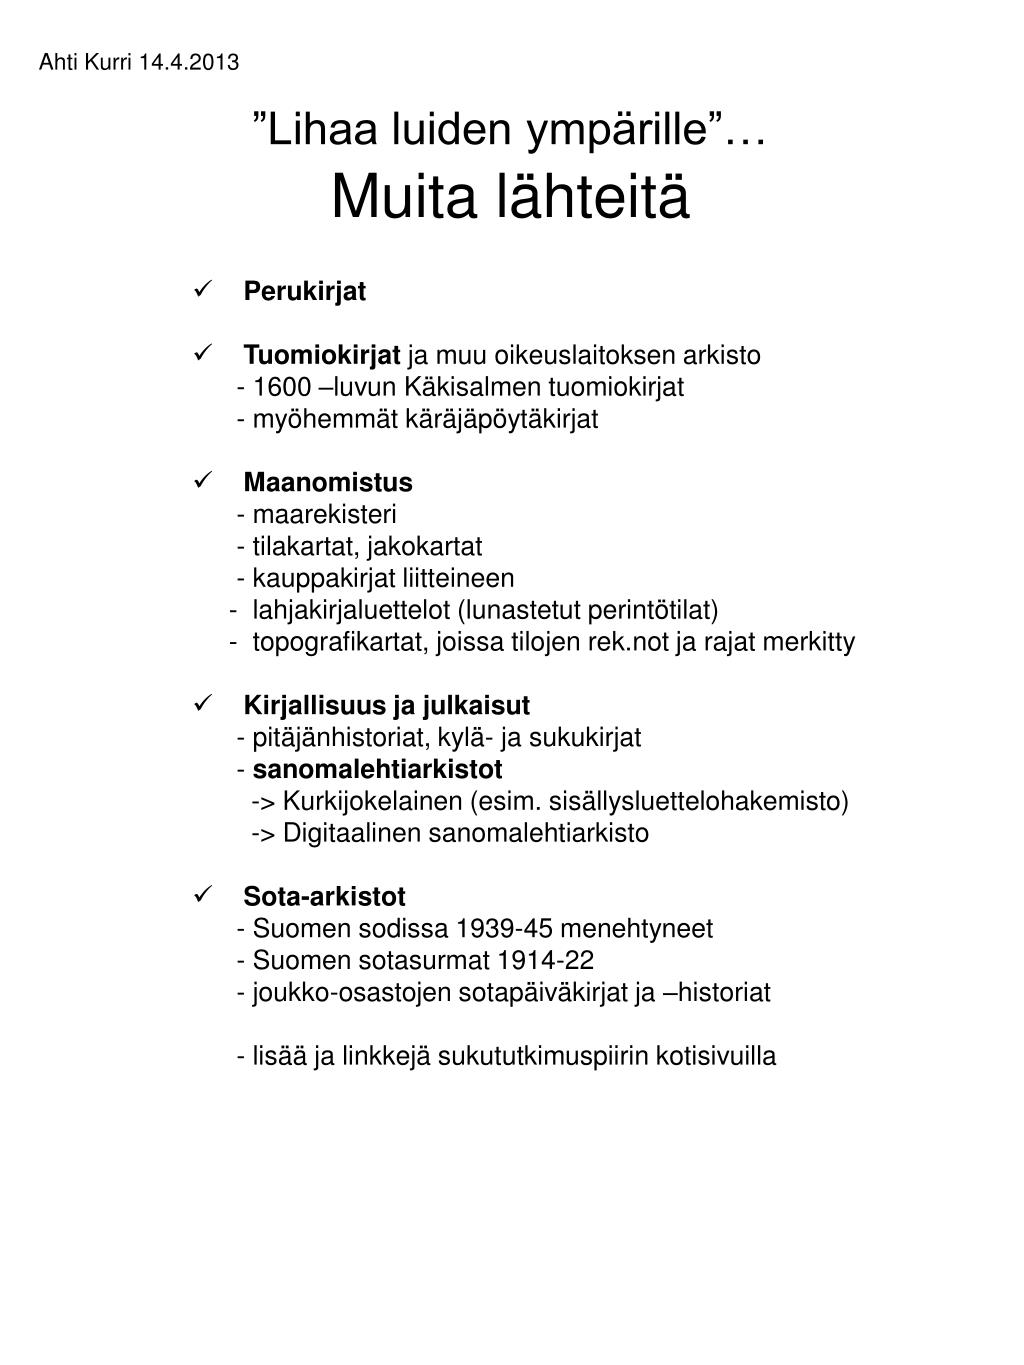 PPT - Hiitolan-Kurkijoen sukututkimuspiiri PowerPoint Presentation, free  download - ID:4288967